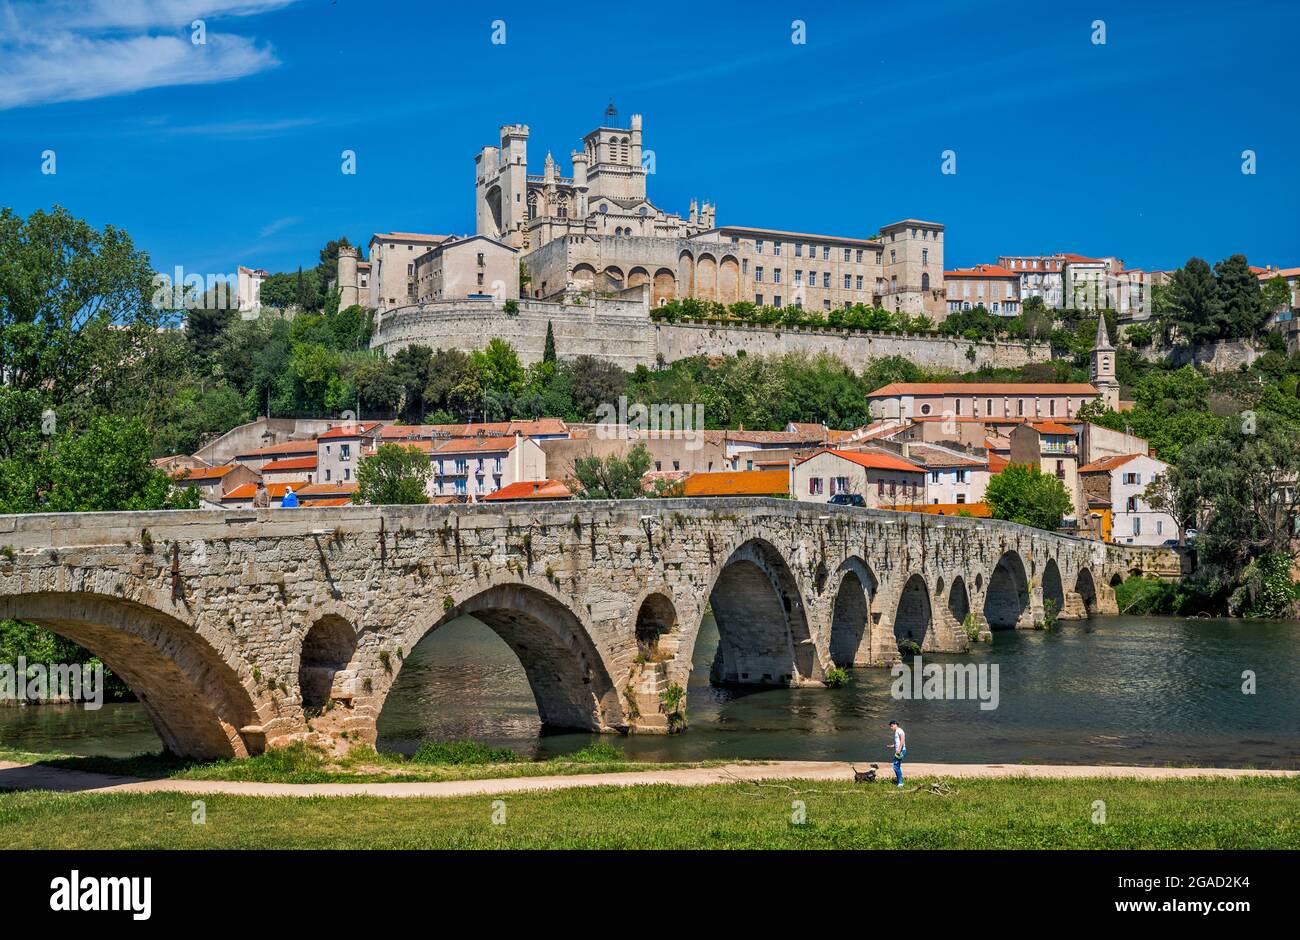 Pont-Vieux traversant l'Orbe, cathédrale Saint-Nazaire (cathédrale Saint-Nazaire), à Béziers, département de l'Hérault, région occitanie, France Banque D'Images